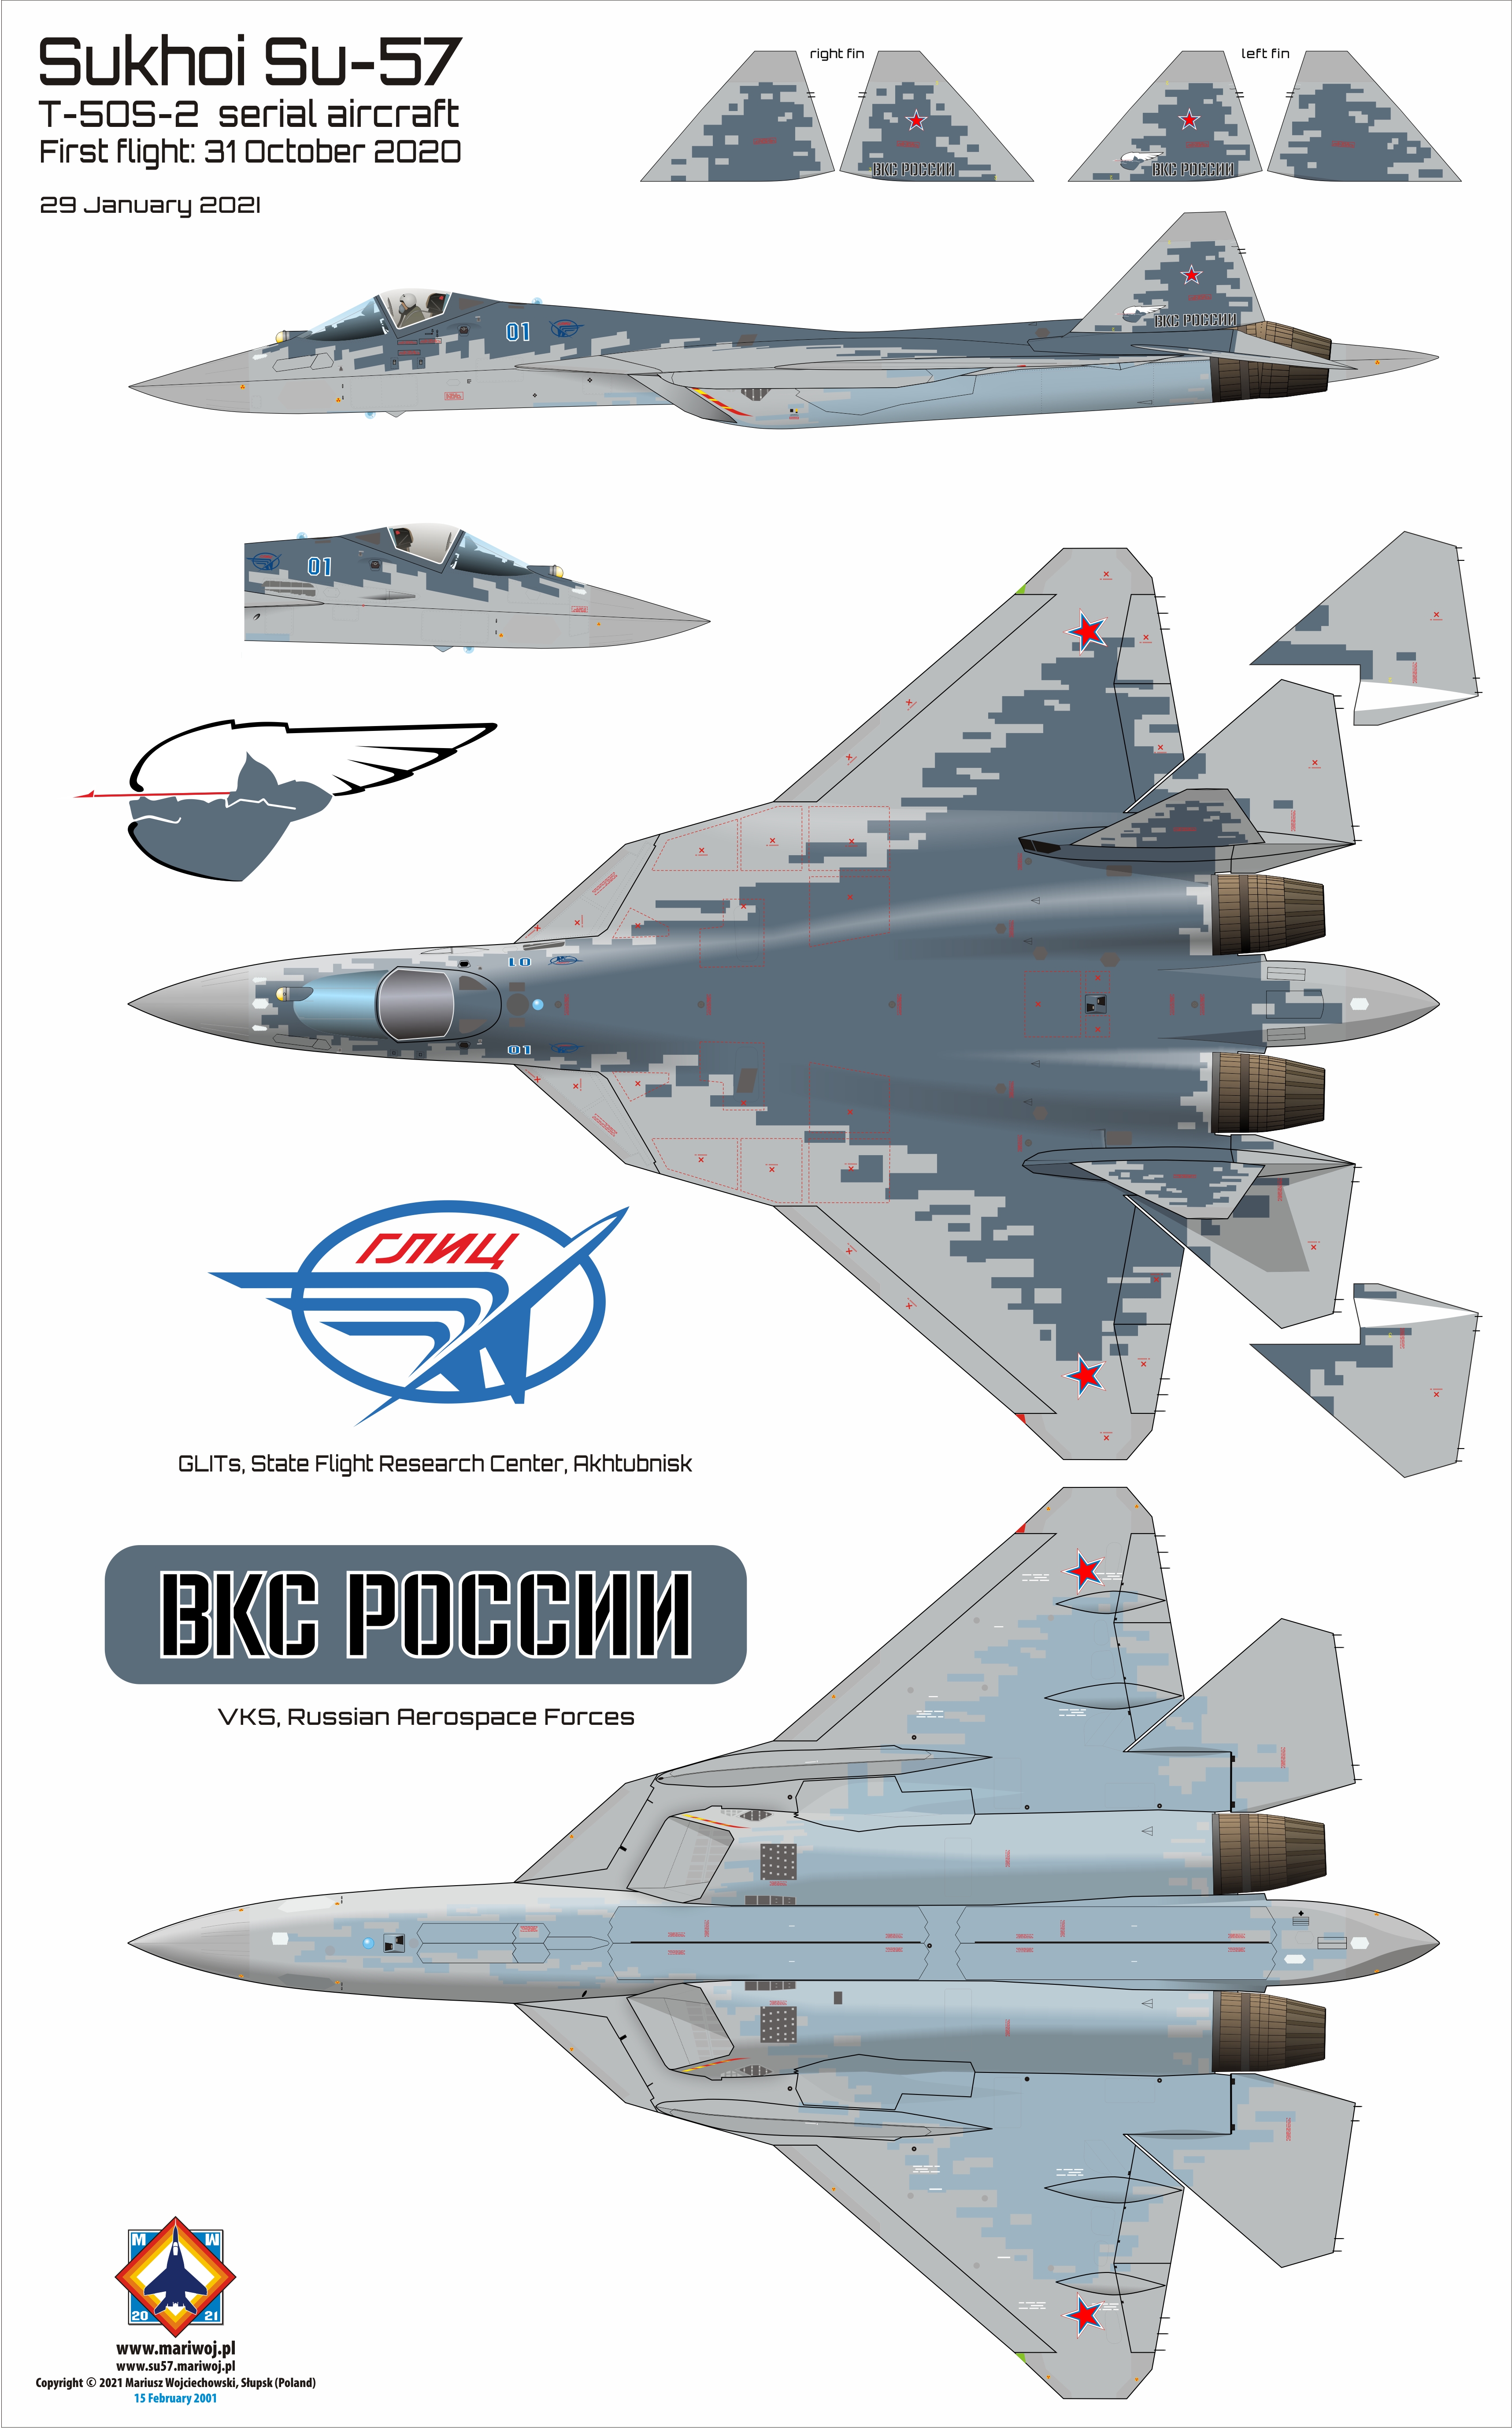 Serial Sukhoi Su-57